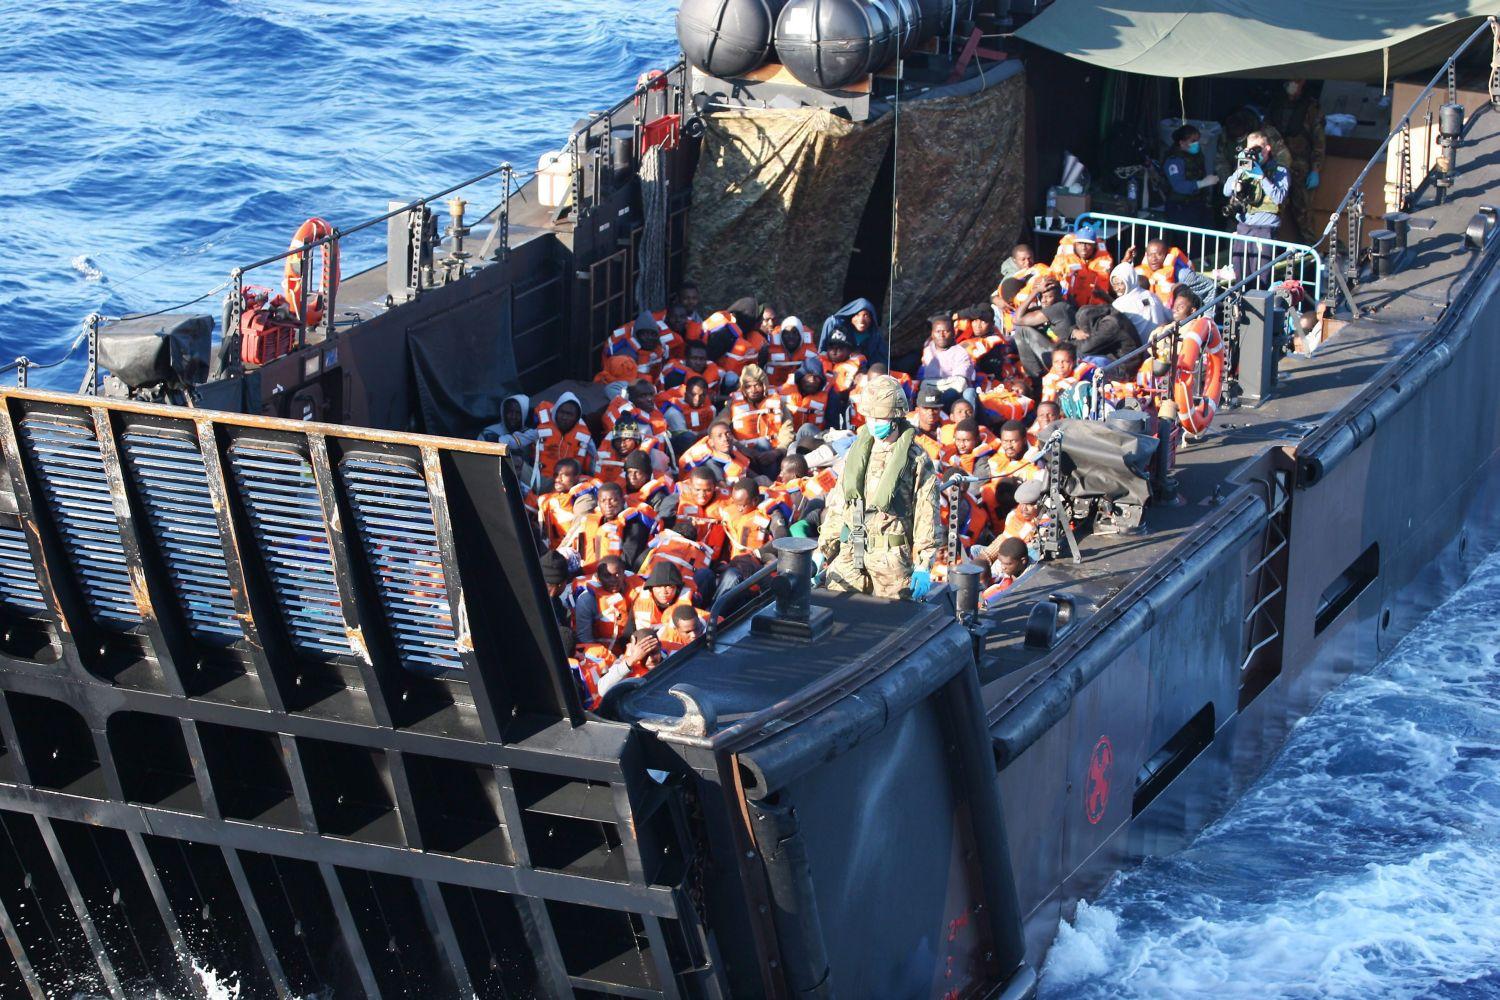 Észak-afrikai menekülteket mentett ki a brit haditengerészet a Földközi-tengerből -  van elég bajuk nélkülünk is